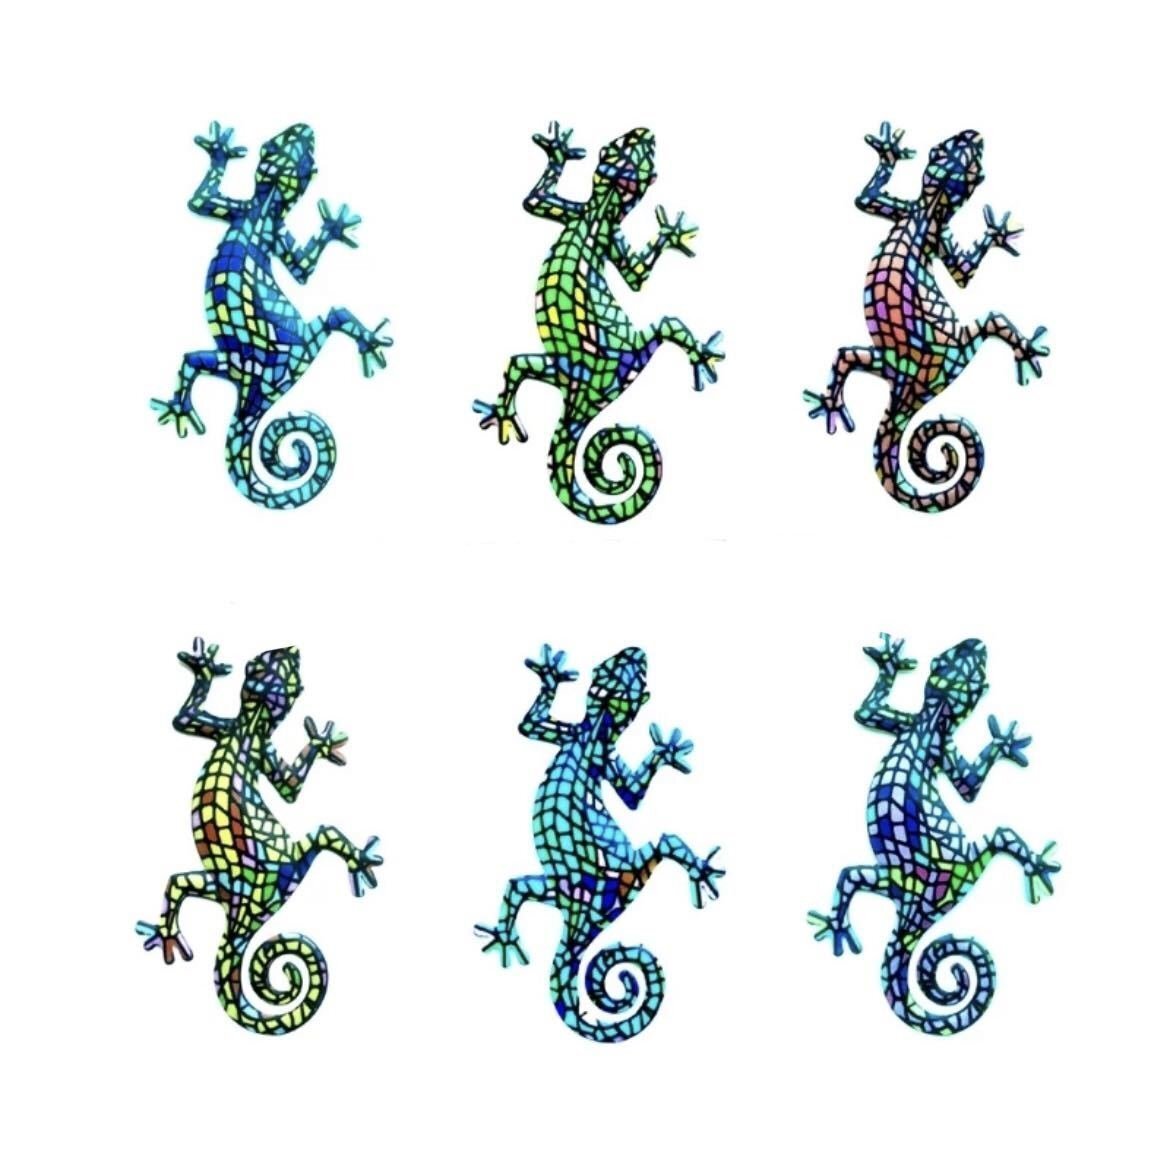 LHH782★6 Farben erhältlich Wanddekorationen Eidechsen Molche Geckos Wandbehänge 3D-Tapete Niedliche stilvolle Kunstaccessoires Innendekoration, Handgefertigte Artikel, Innere, Verschiedene Waren, Kissen